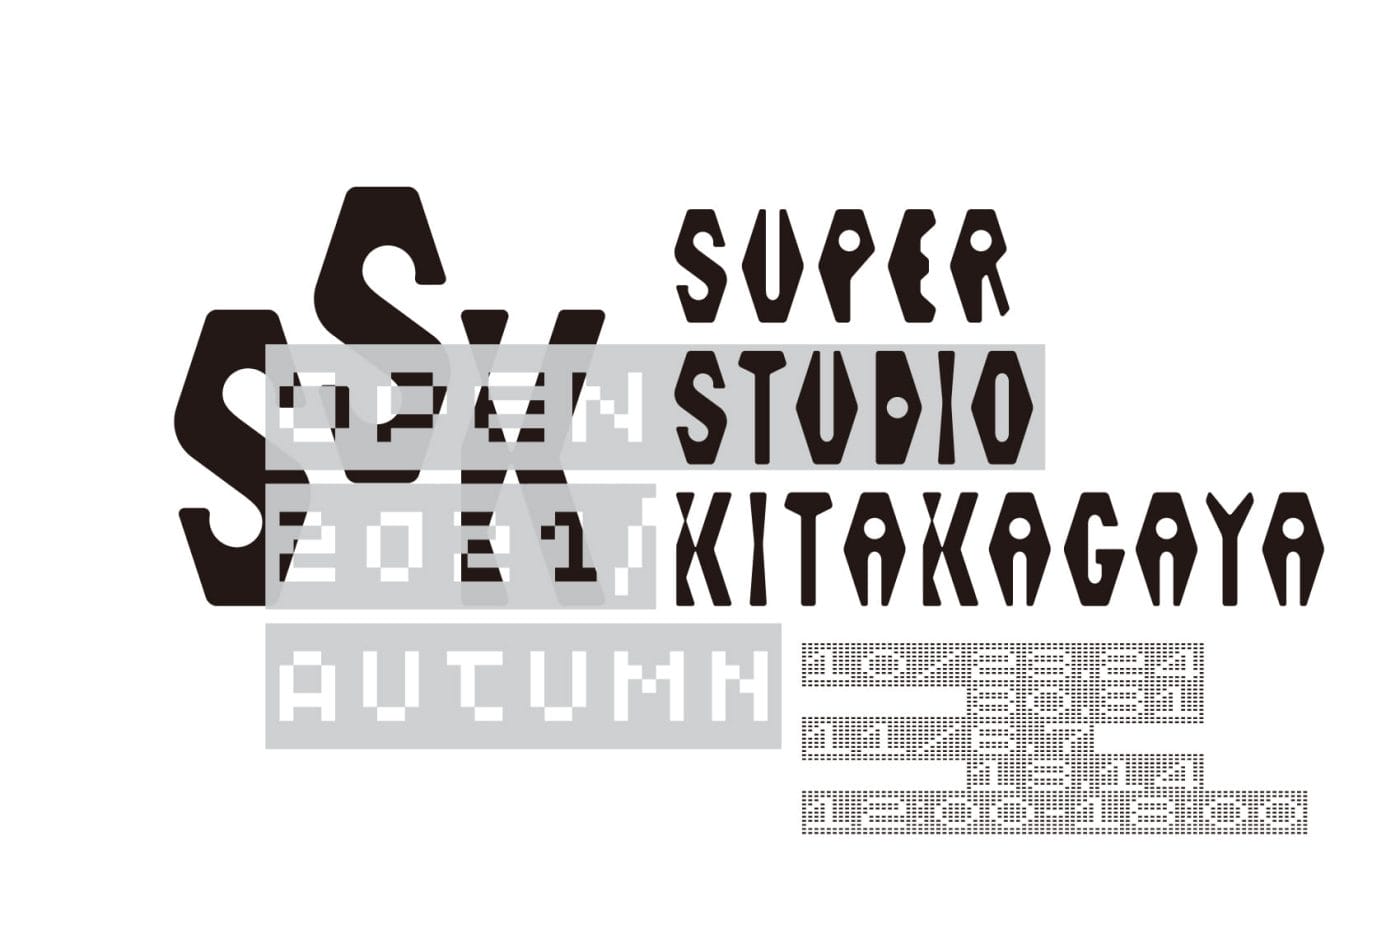 アーティスト・クリエイター向けシェアスタジオ「Super Studio Kitakagaya」にて、「Open Studio 2021 Autumn」。スタジオの一般公開に加え、3組の入居アーティストが新作を発表。